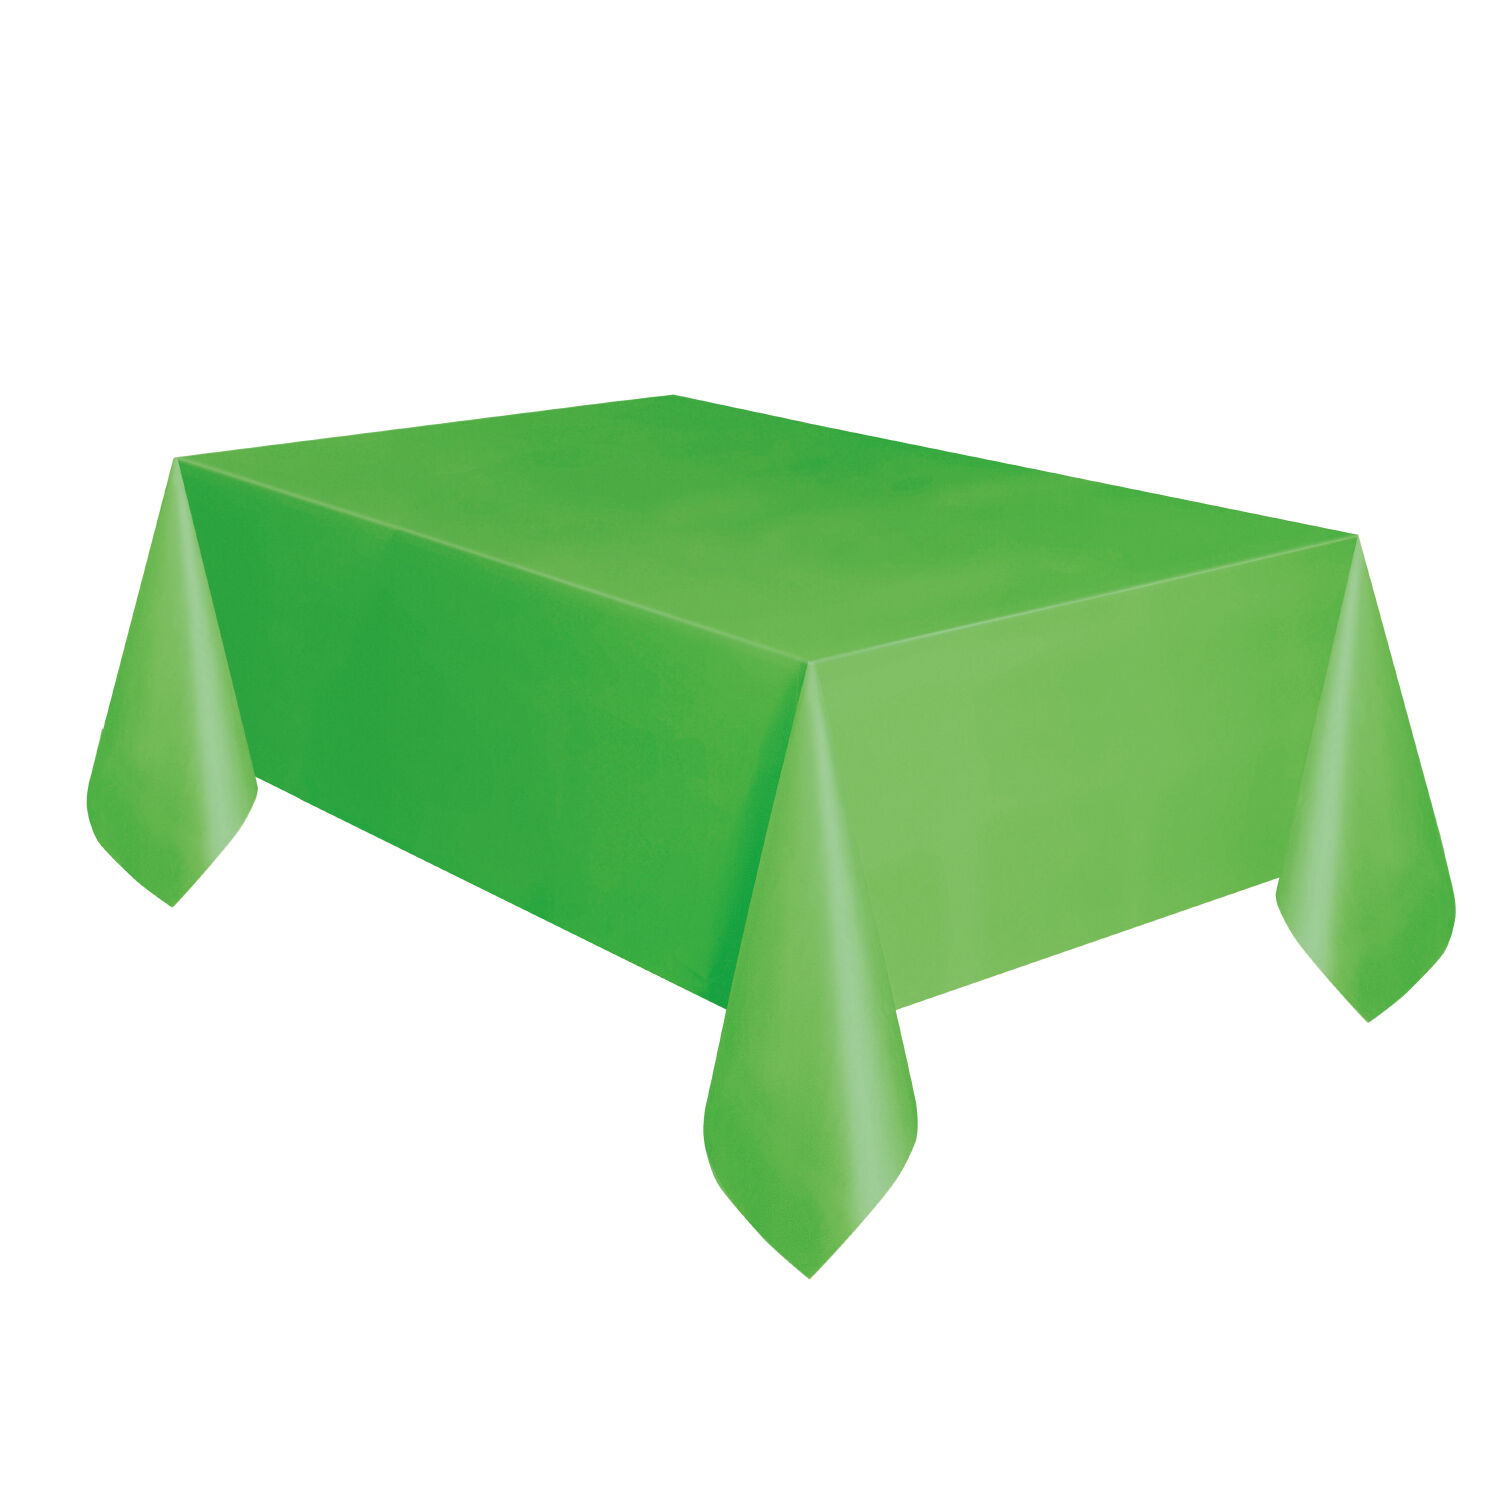 NEU Mehrweg-Tischdecke aus Kunststoff, Größe ca. 137x274cm, hellgrün